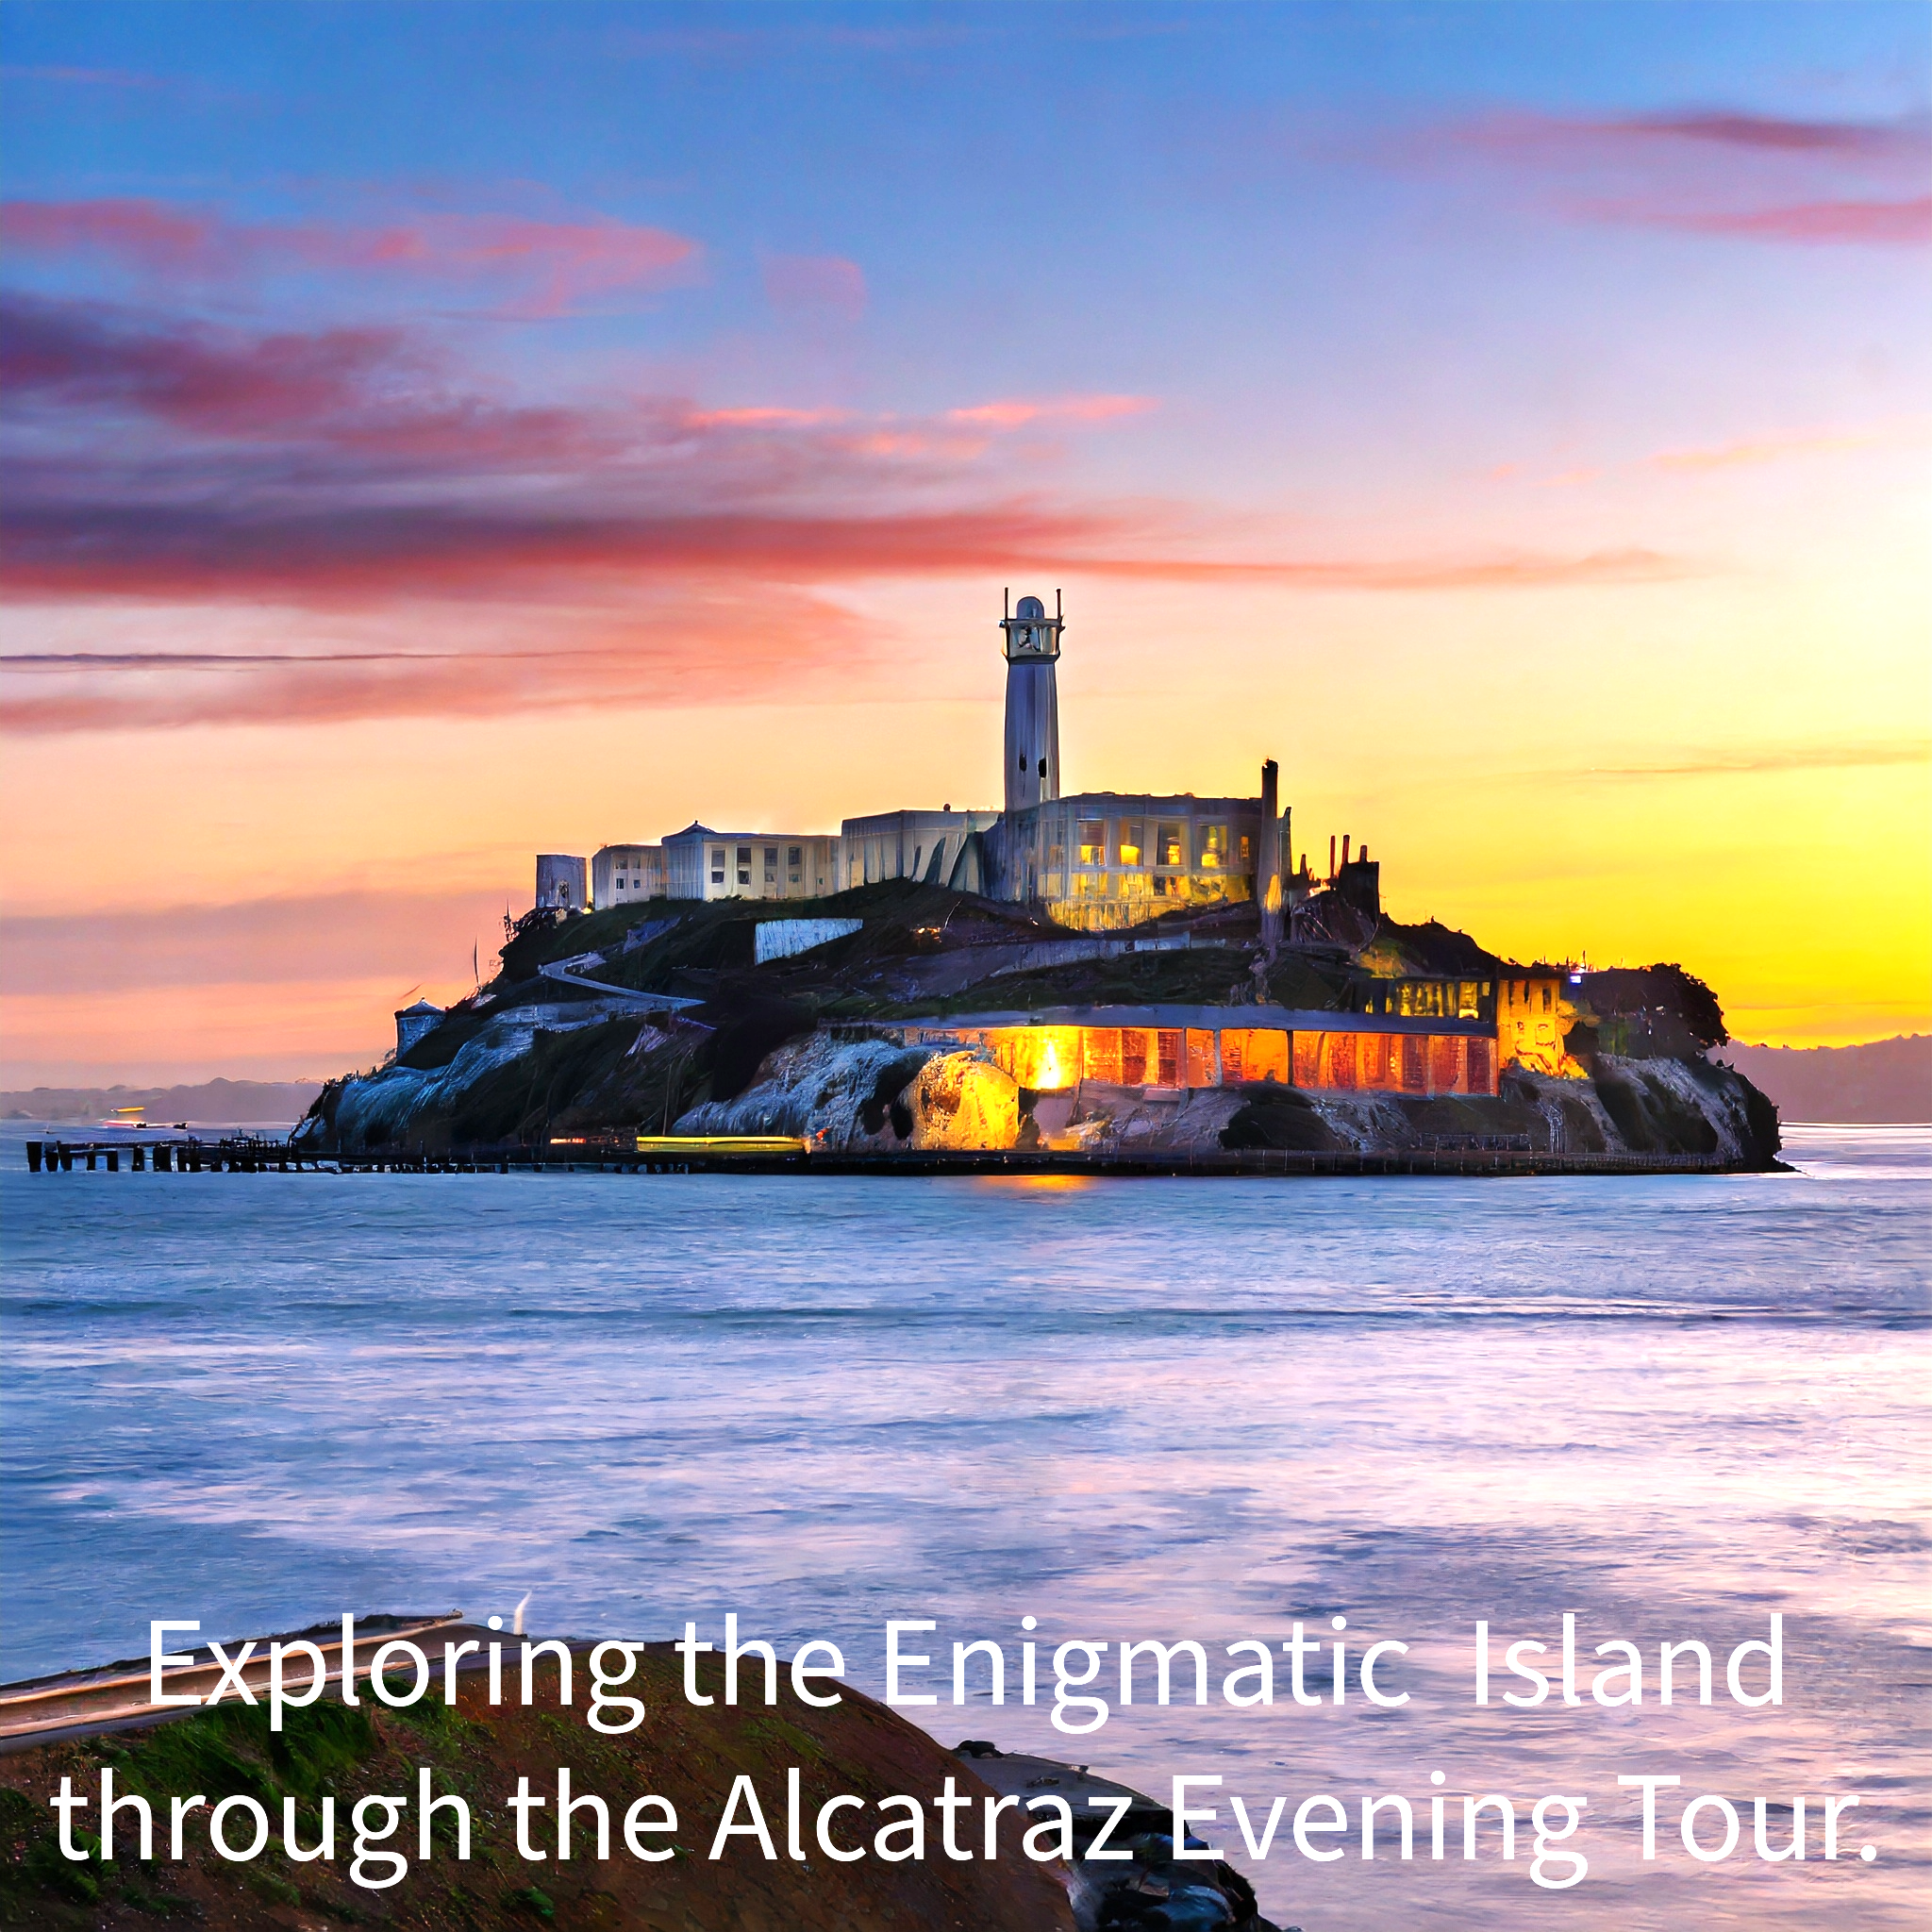 Alcatraz evening tour